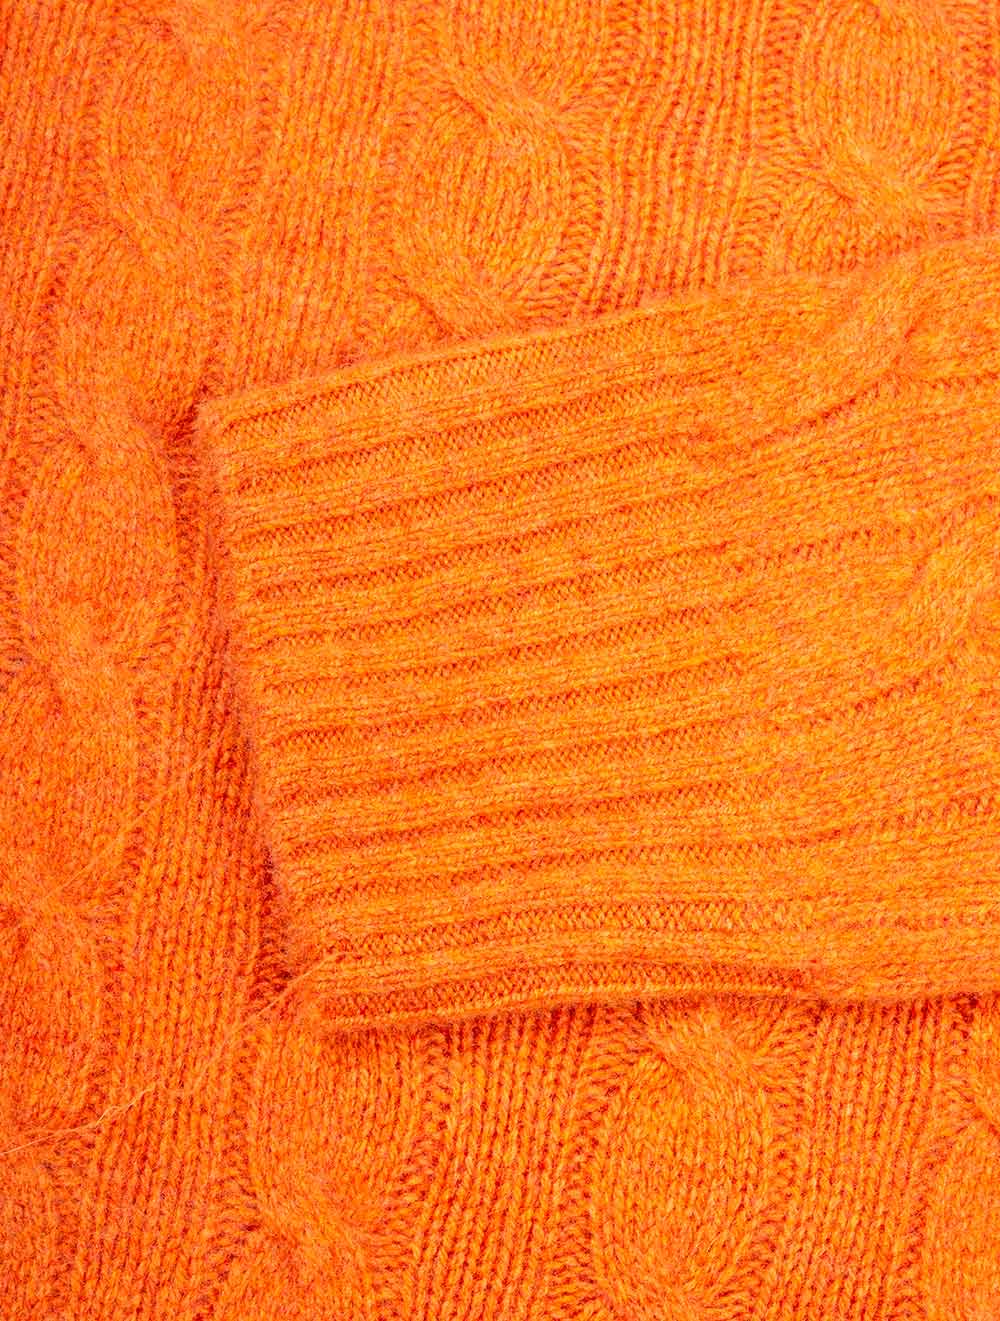 Ralph Lauren Cable-Knit Jumper Orange